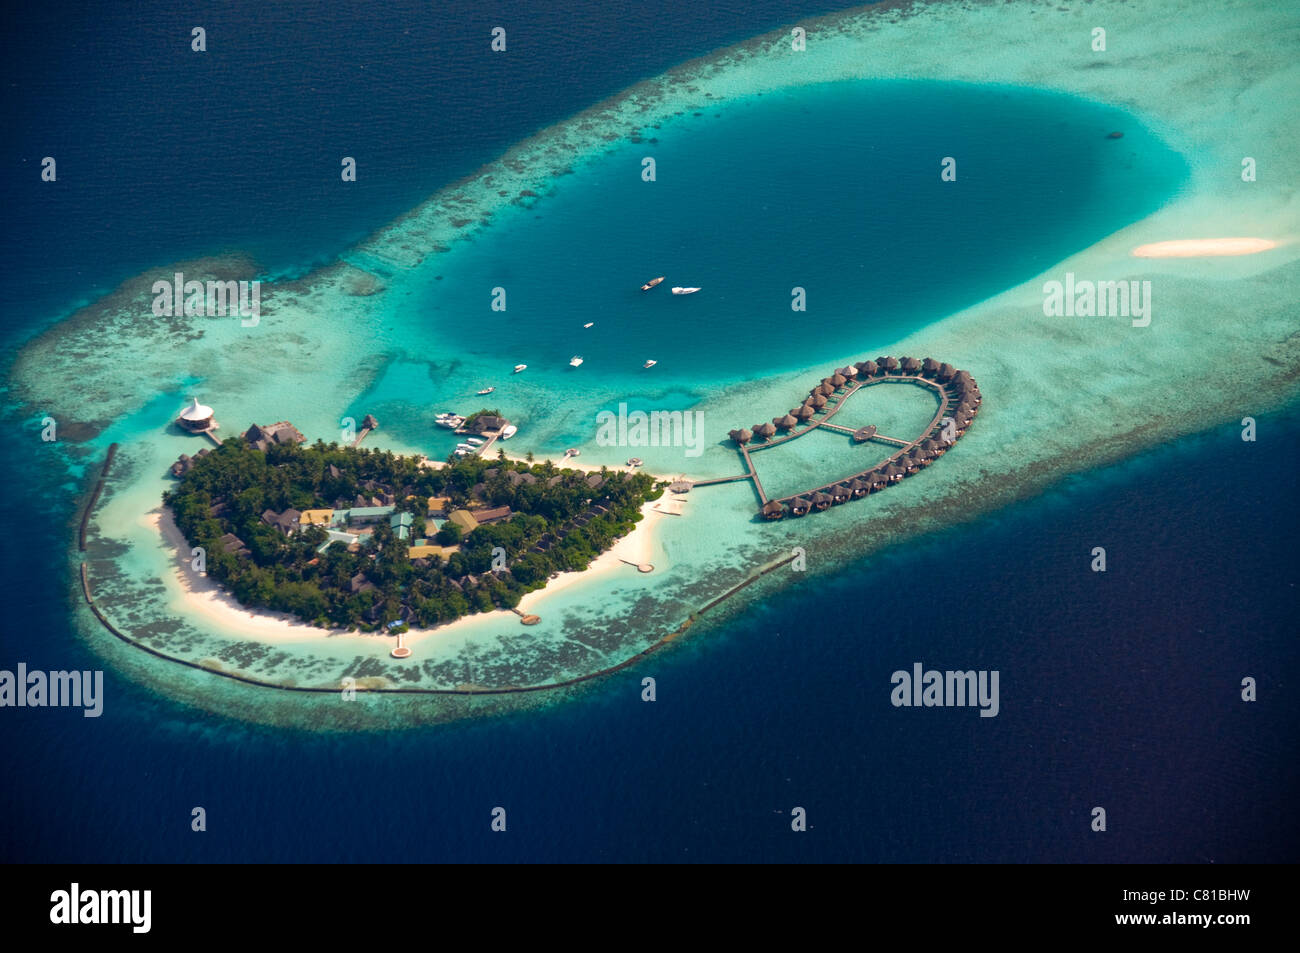 Isole delle Maldive vista aerea, spiagge, atoll, sabbia, paradise, Coral reef, isola tropicale, acqua chiara, acqua azzurra, vacanza Foto Stock